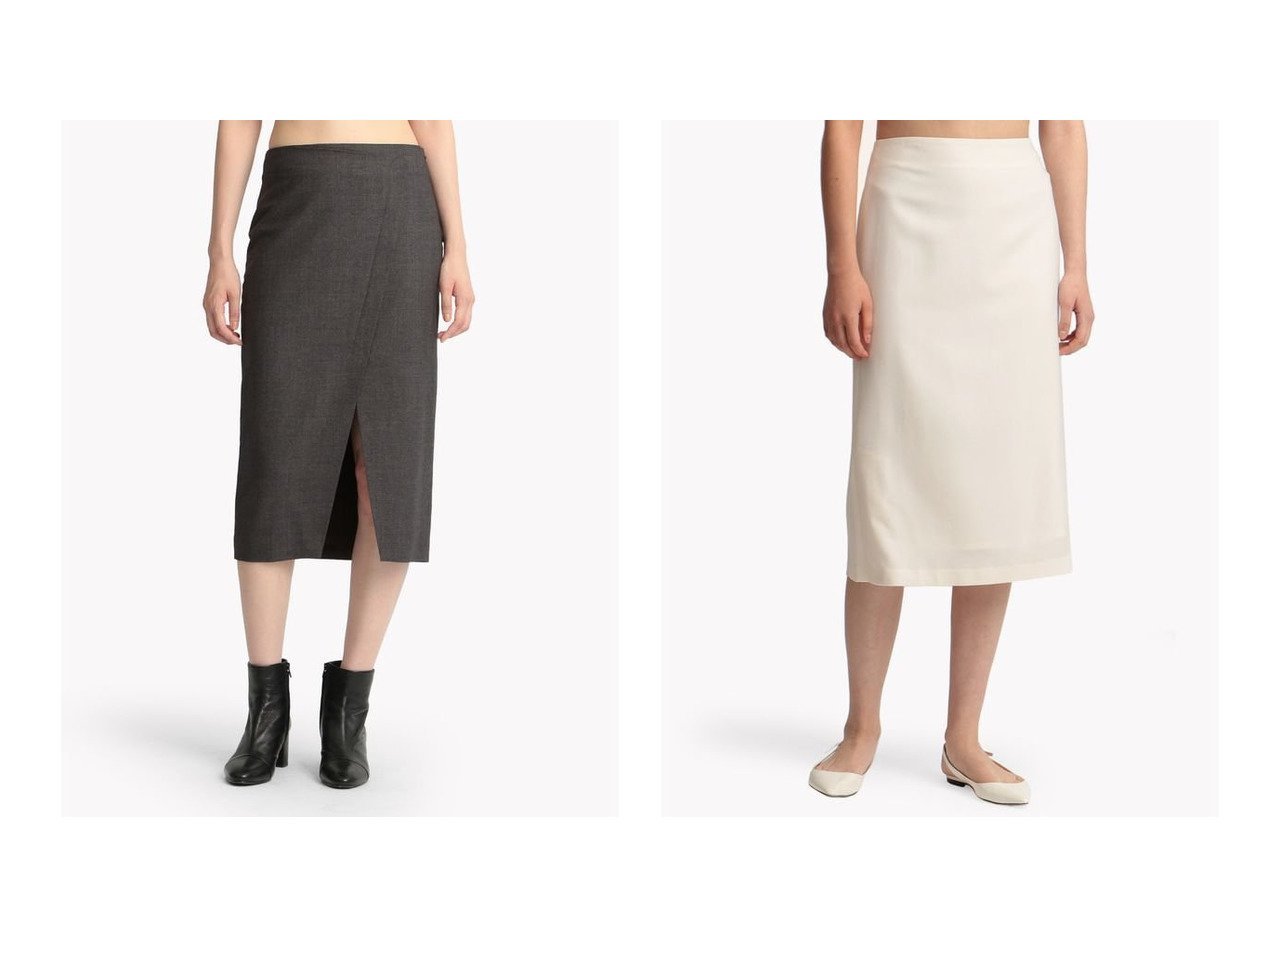 【theory/セオリー】のスカート LIGHT SAXONY 2 OVERLAP SK&【Theory Luxe/セオリーリュクス】の【セットアップ対応商品】スカート SAXONY SOFT DELLA スカートのおすすめ！人気、レディースファッションの通販 おすすめで人気のファッション通販商品 インテリア・家具・キッズファッション・メンズファッション・レディースファッション・服の通販 founy(ファニー) https://founy.com/ ファッション Fashion レディース WOMEN スカート Skirt セットアップ Setup スカート Skirt スーツ Suits スーツ スカート Skirt スーツセット Suit Sets ウォーム ストレッチ スリット タイトスカート ファブリック フロント ラップ クラシカル スーツ セットアップ トレンド ドレープ フォーマル ペンシル |ID:crp329100000004882